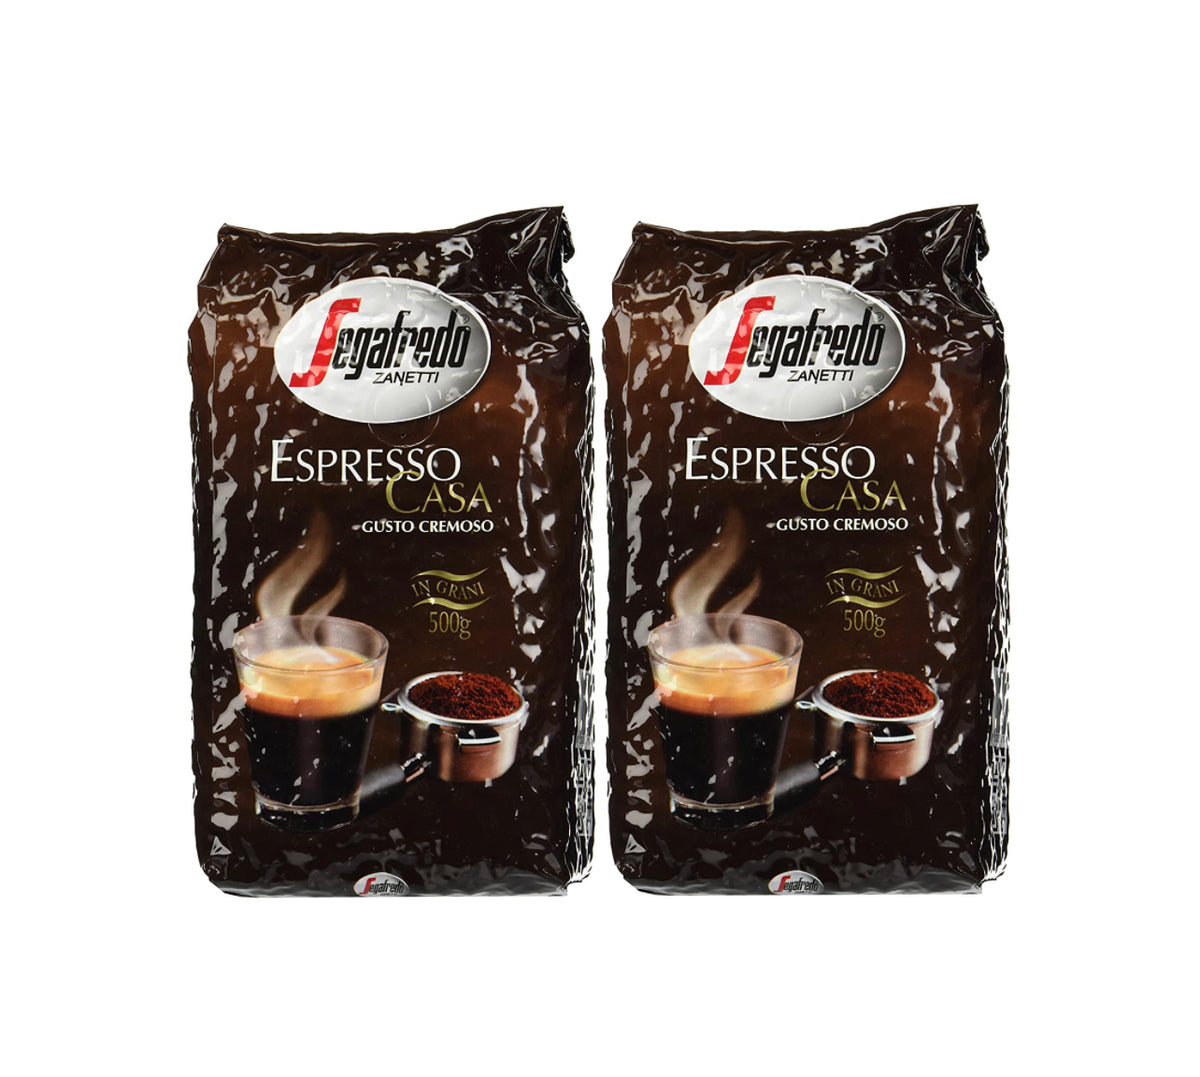 Café en grains Segafredo espresso CASA crema (1kg)